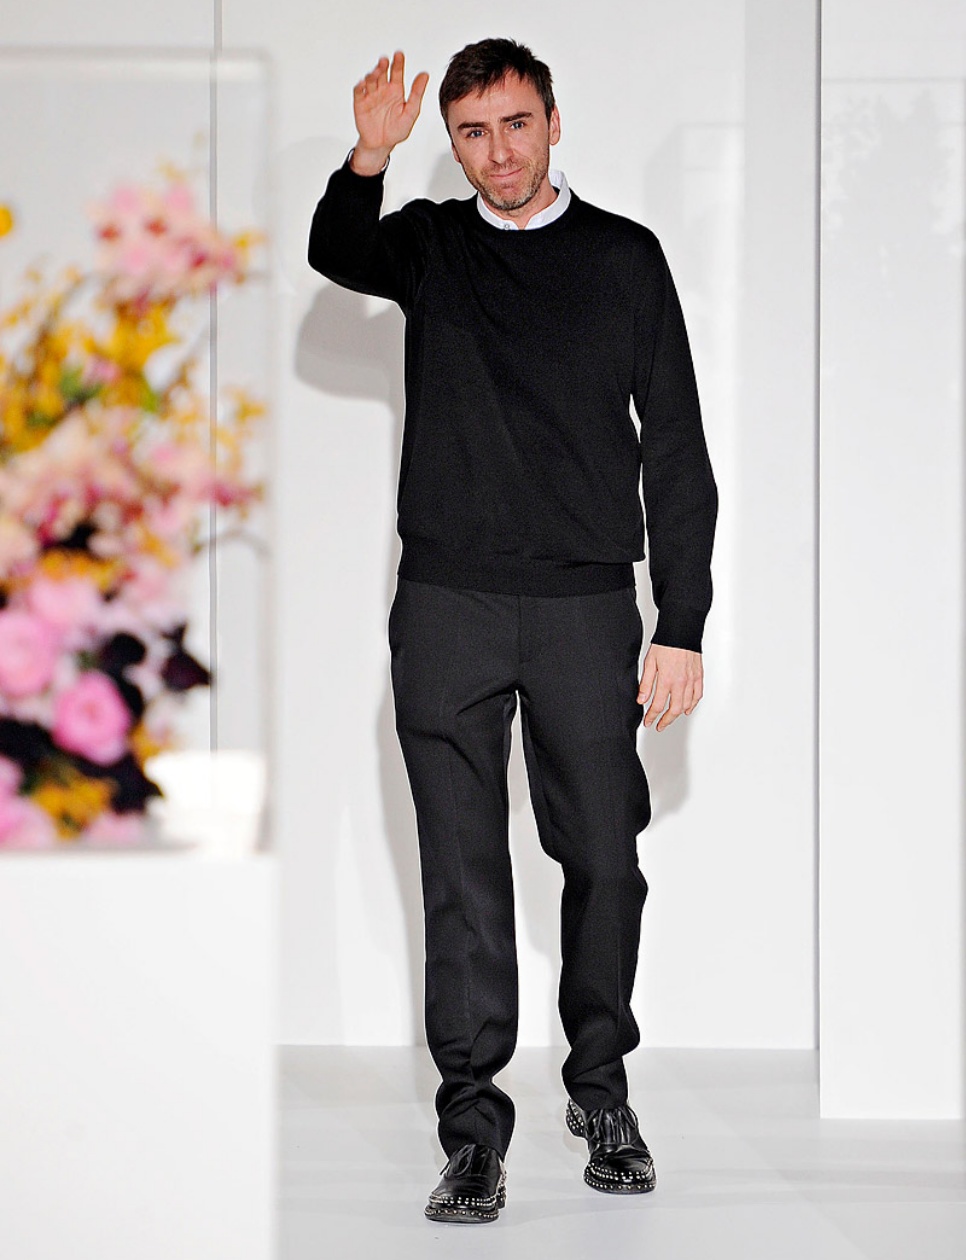 Raf Simons di runway show terakhirnya untuk Jil Sander di tahun 2012.